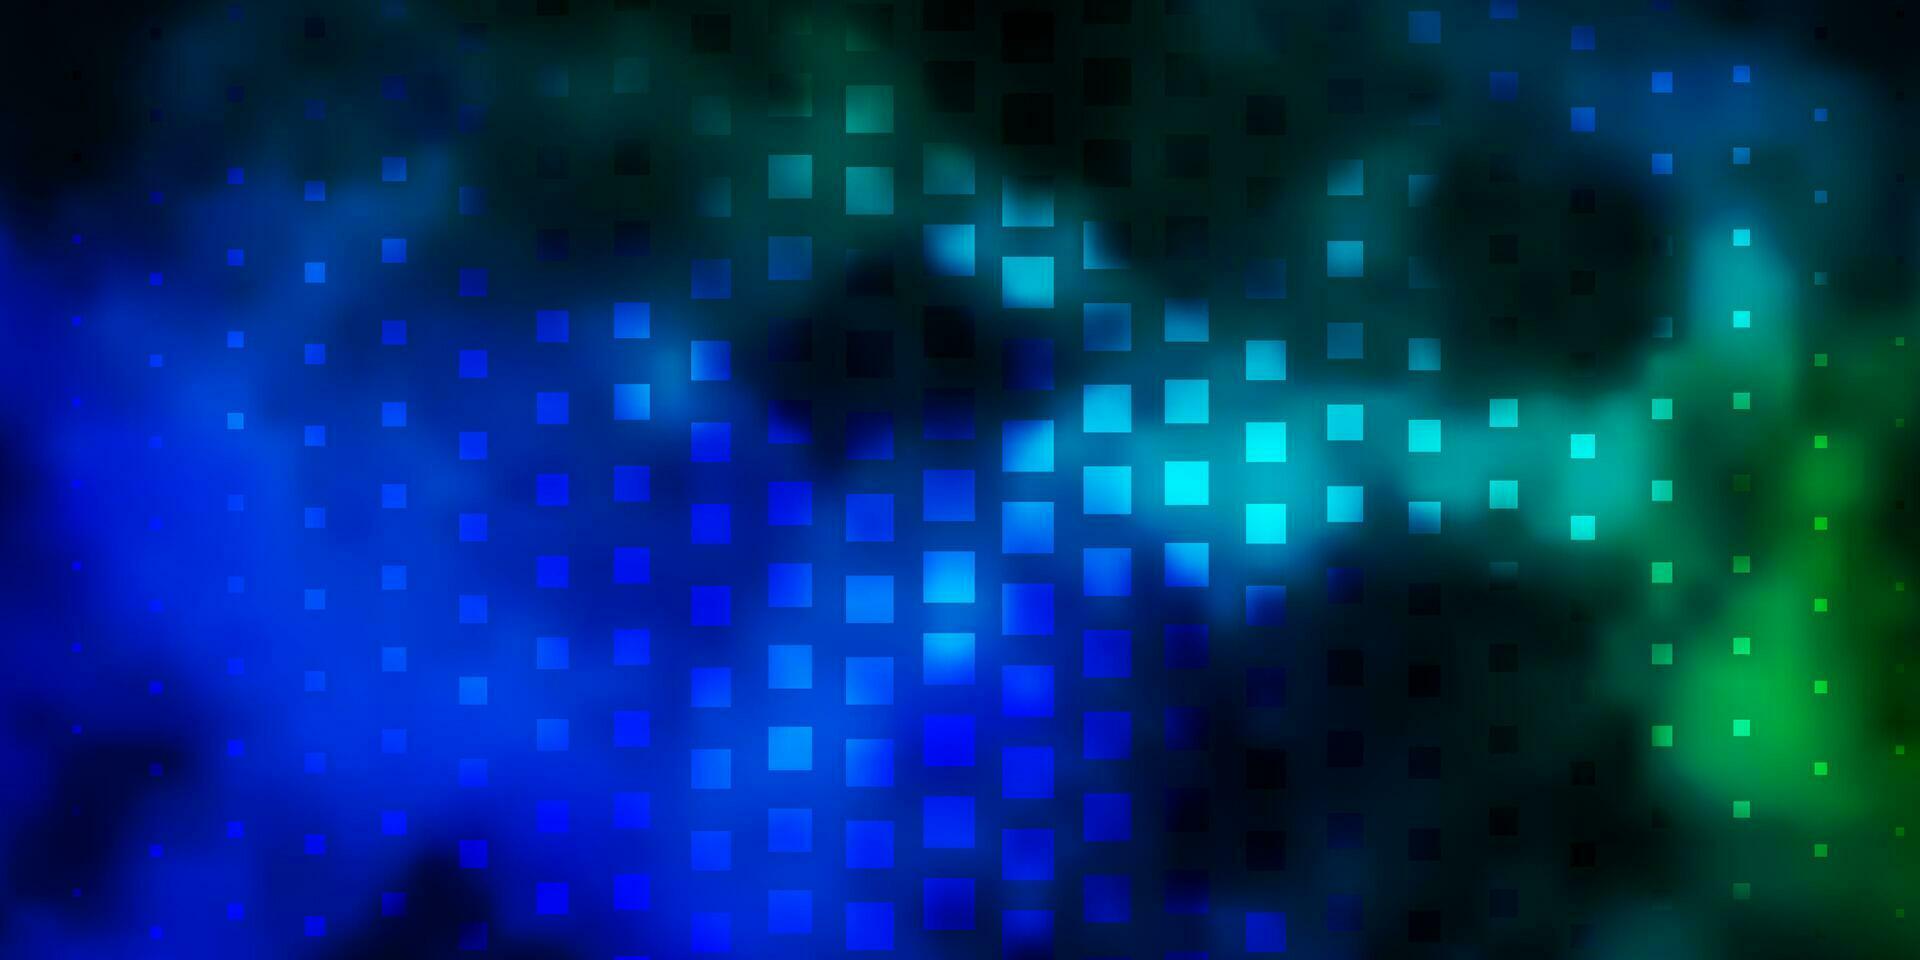 textura vector azul e verde escuro em estilo retangular.